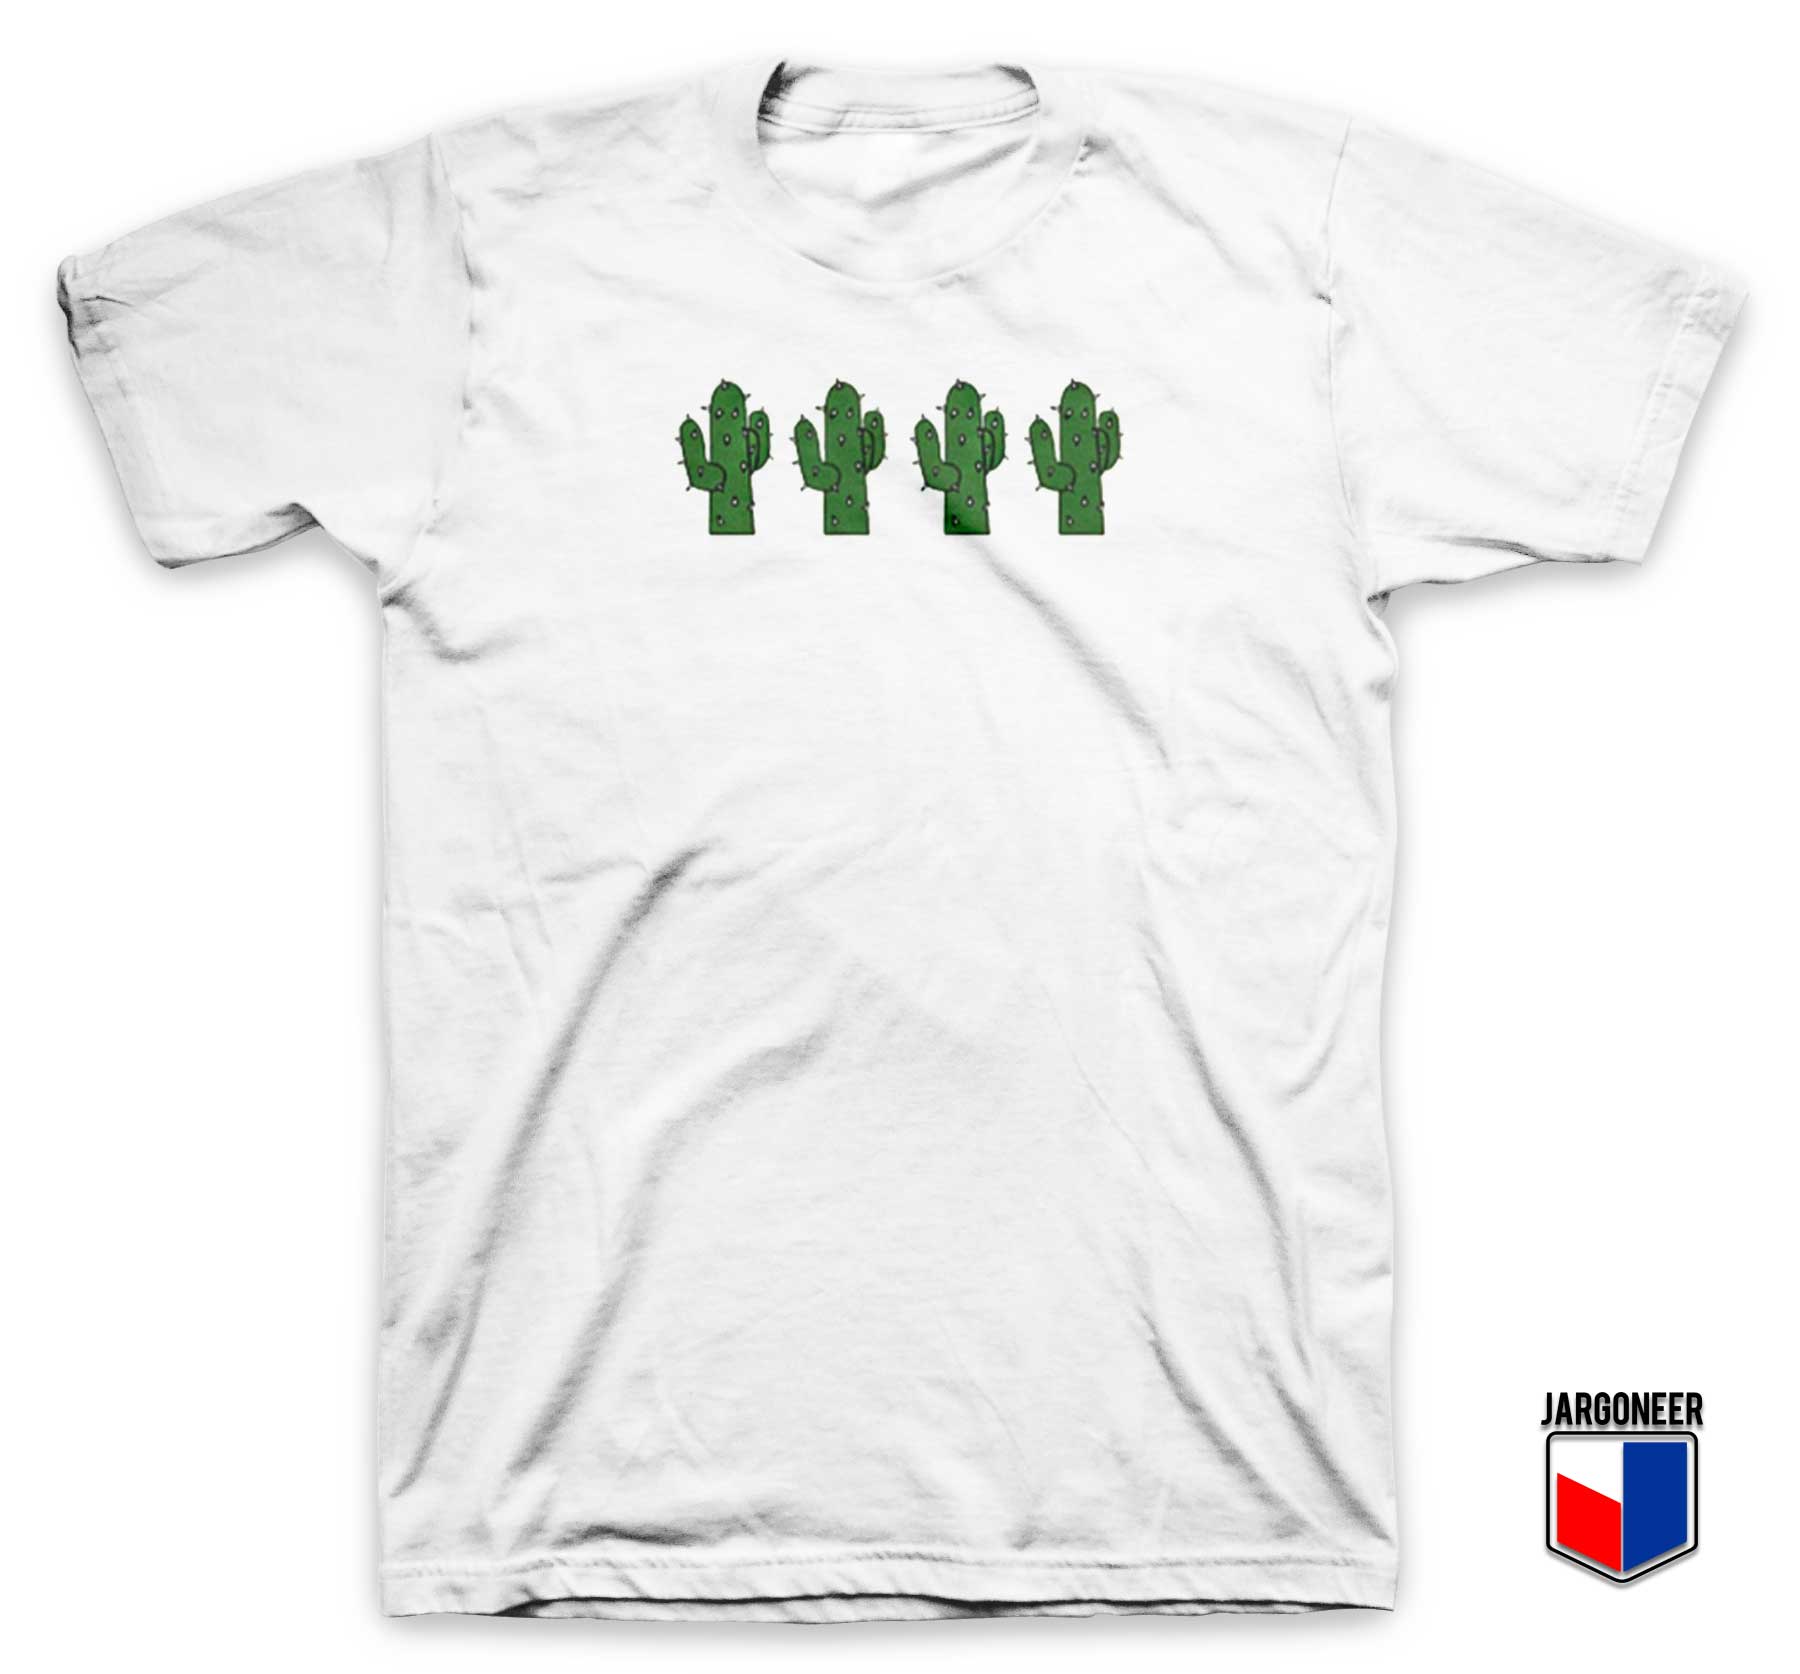 Cactus Four Friends T Shirt - Shop Unique Graphic Cool Shirt Designs